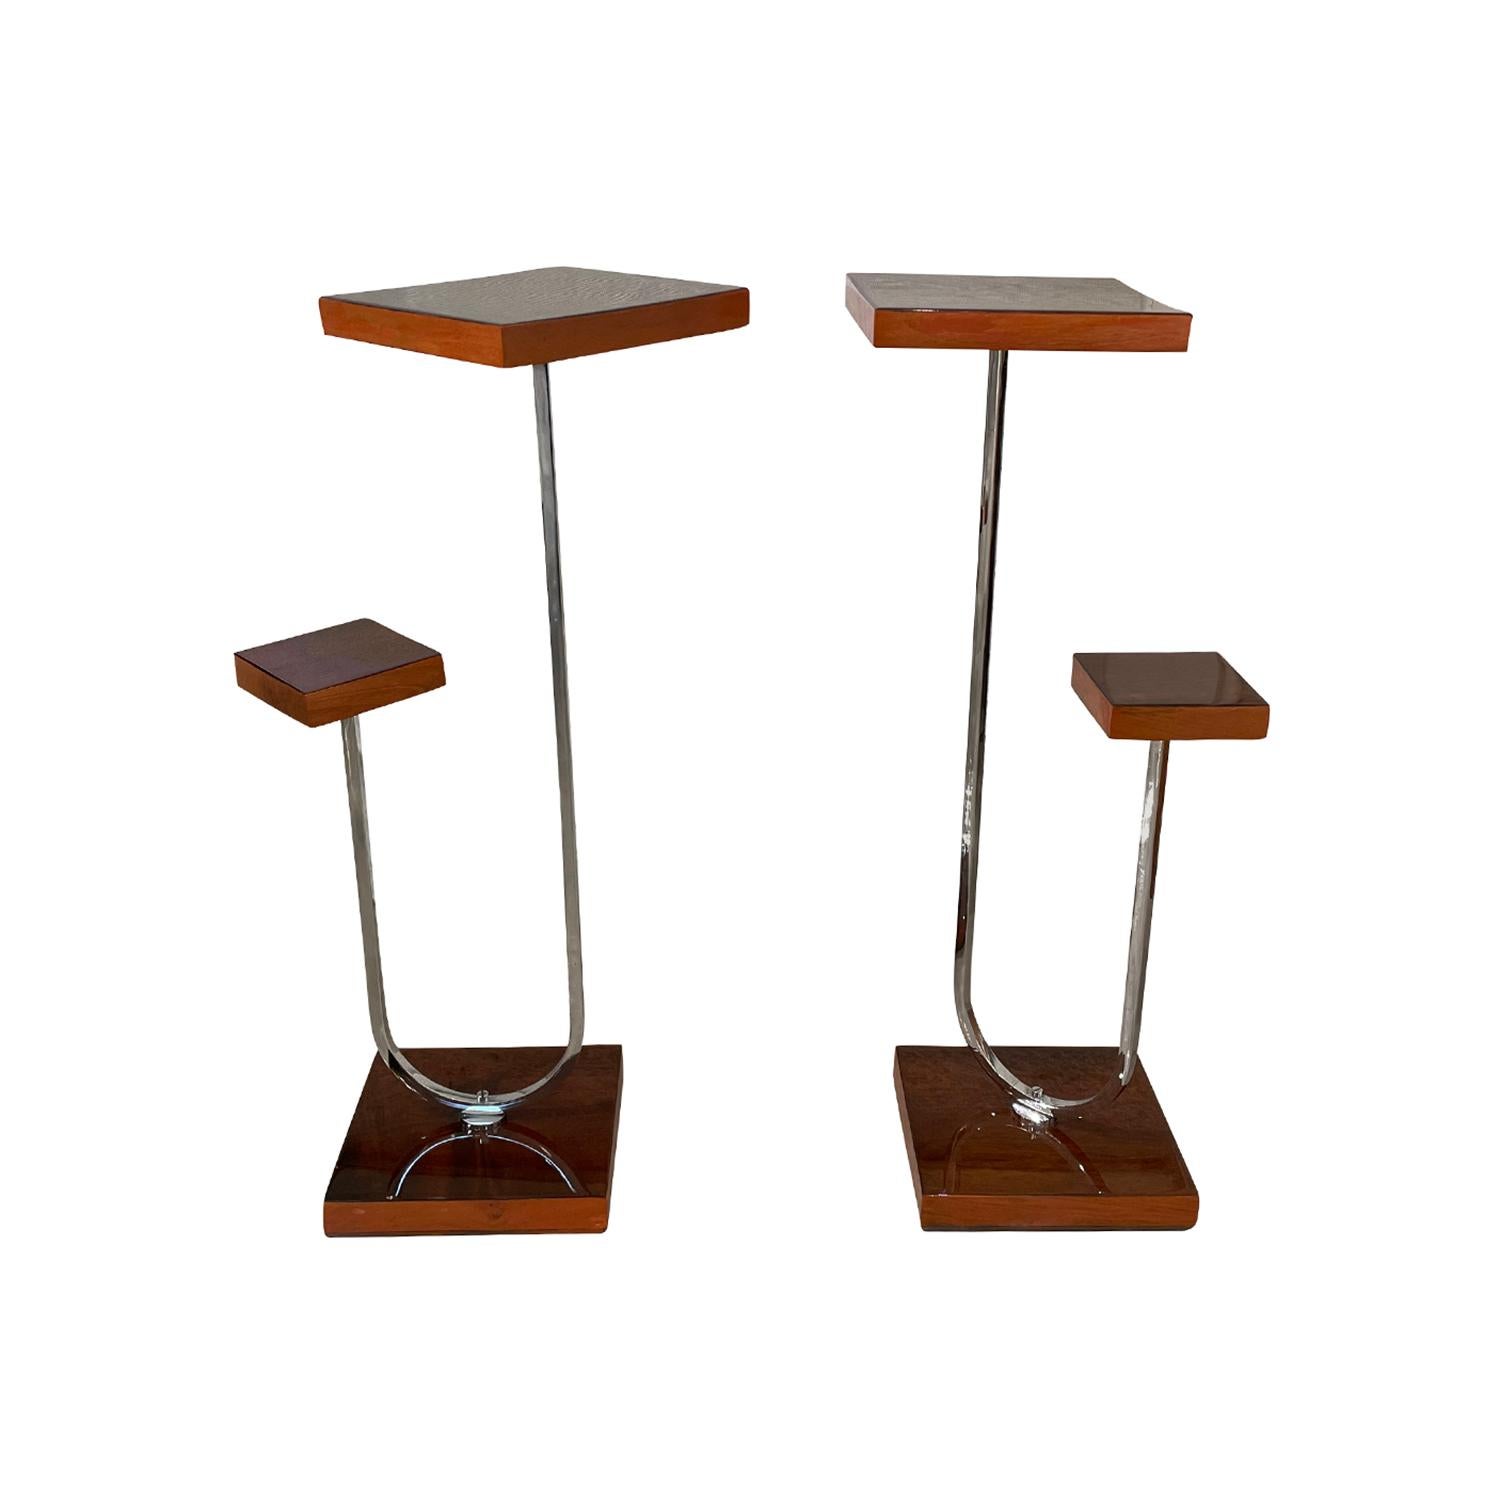 Ein kleines, italienisches Art-Deco-Paar, Beistelltische aus handgefertigtem, poliertem Mahagoni, in gutem Zustand. Jede der quadratischen Tischplatten wird von einem geschwungenen Chromarm getragen, der auf einem Holzsockel ruht. Alters- und